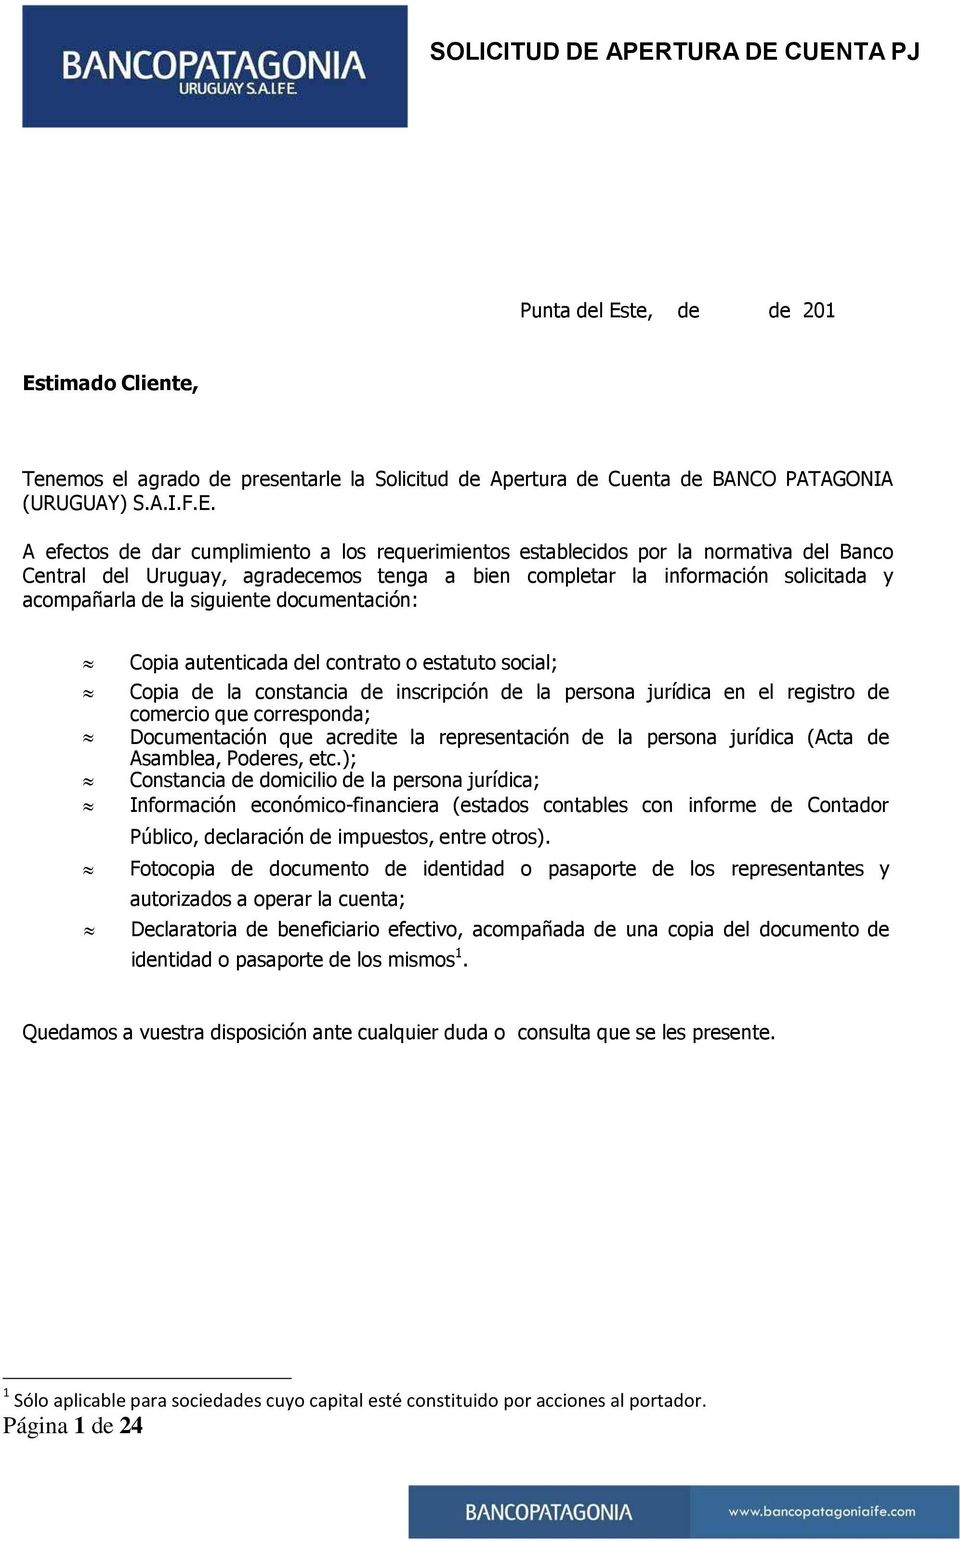 timado Cliente, Tenemos el agrado de presentarle la Solicitud de Apertura de Cuenta de BANCO PATAGONIA (URUGUAY) S.A.I.F.E.